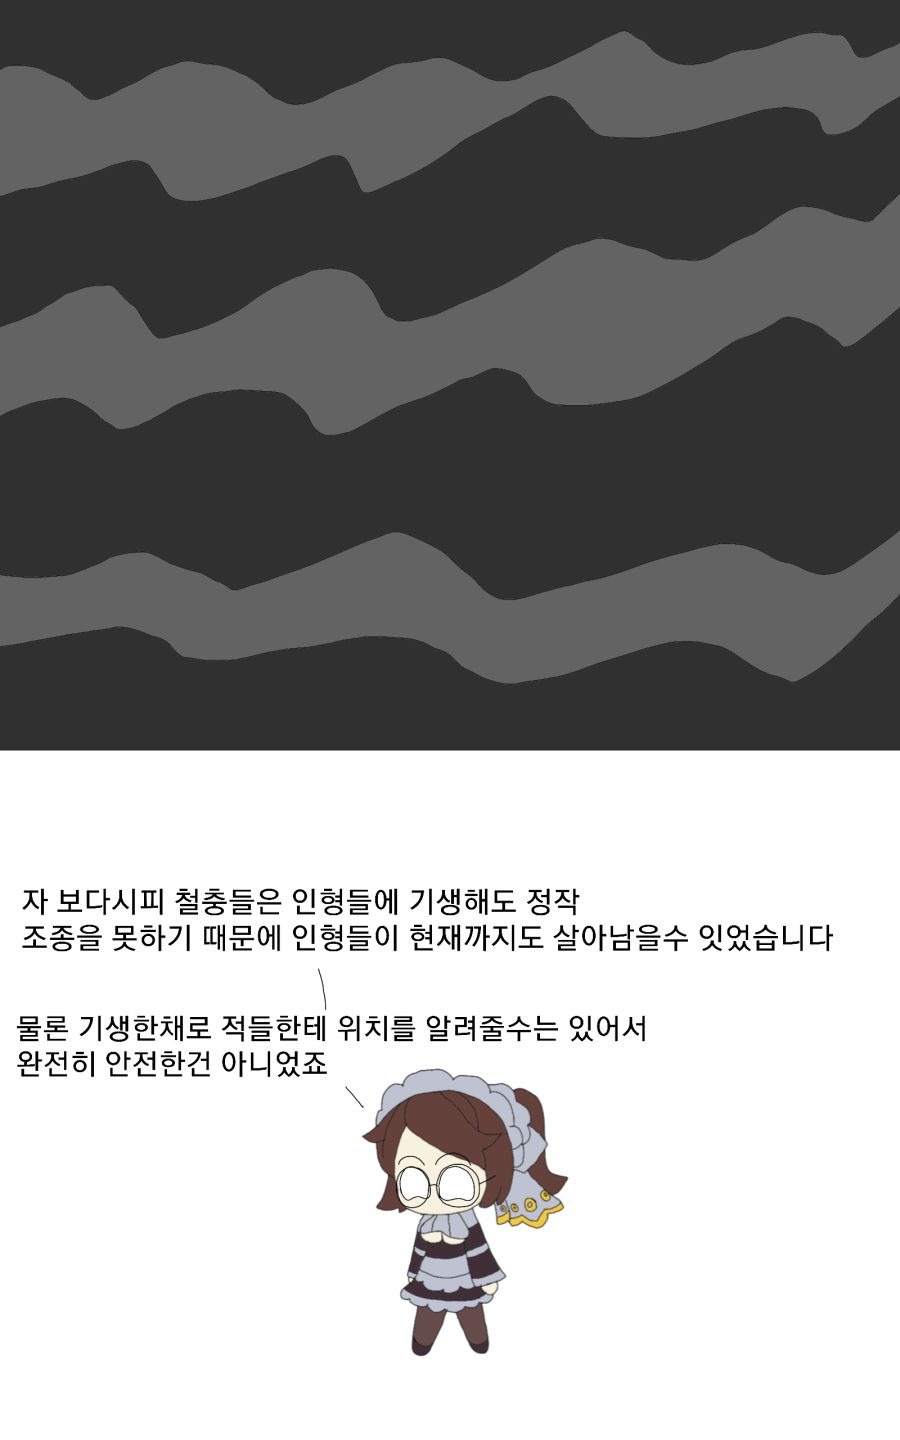 코레 파라다이스 Q A1 팬픽 패러디만화 루리웹 - 구버전 roblox korea 우측 가슴 핀 roblox